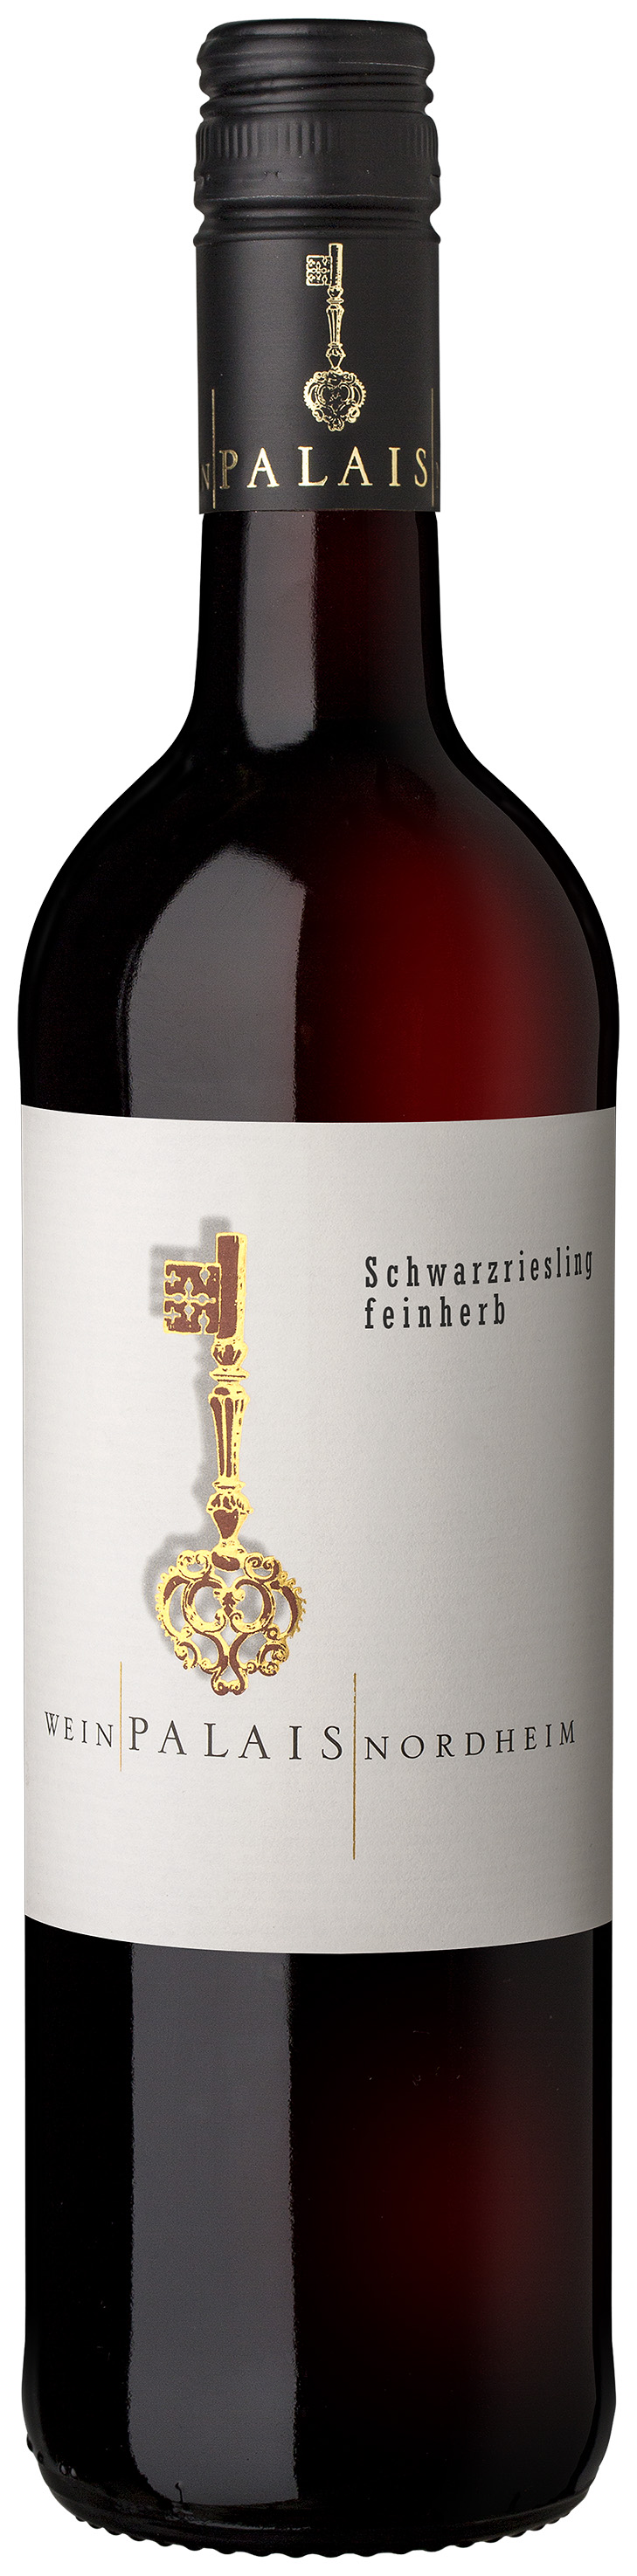 WeinPalais Nordheim 2021 Schwarzriesling feinherb